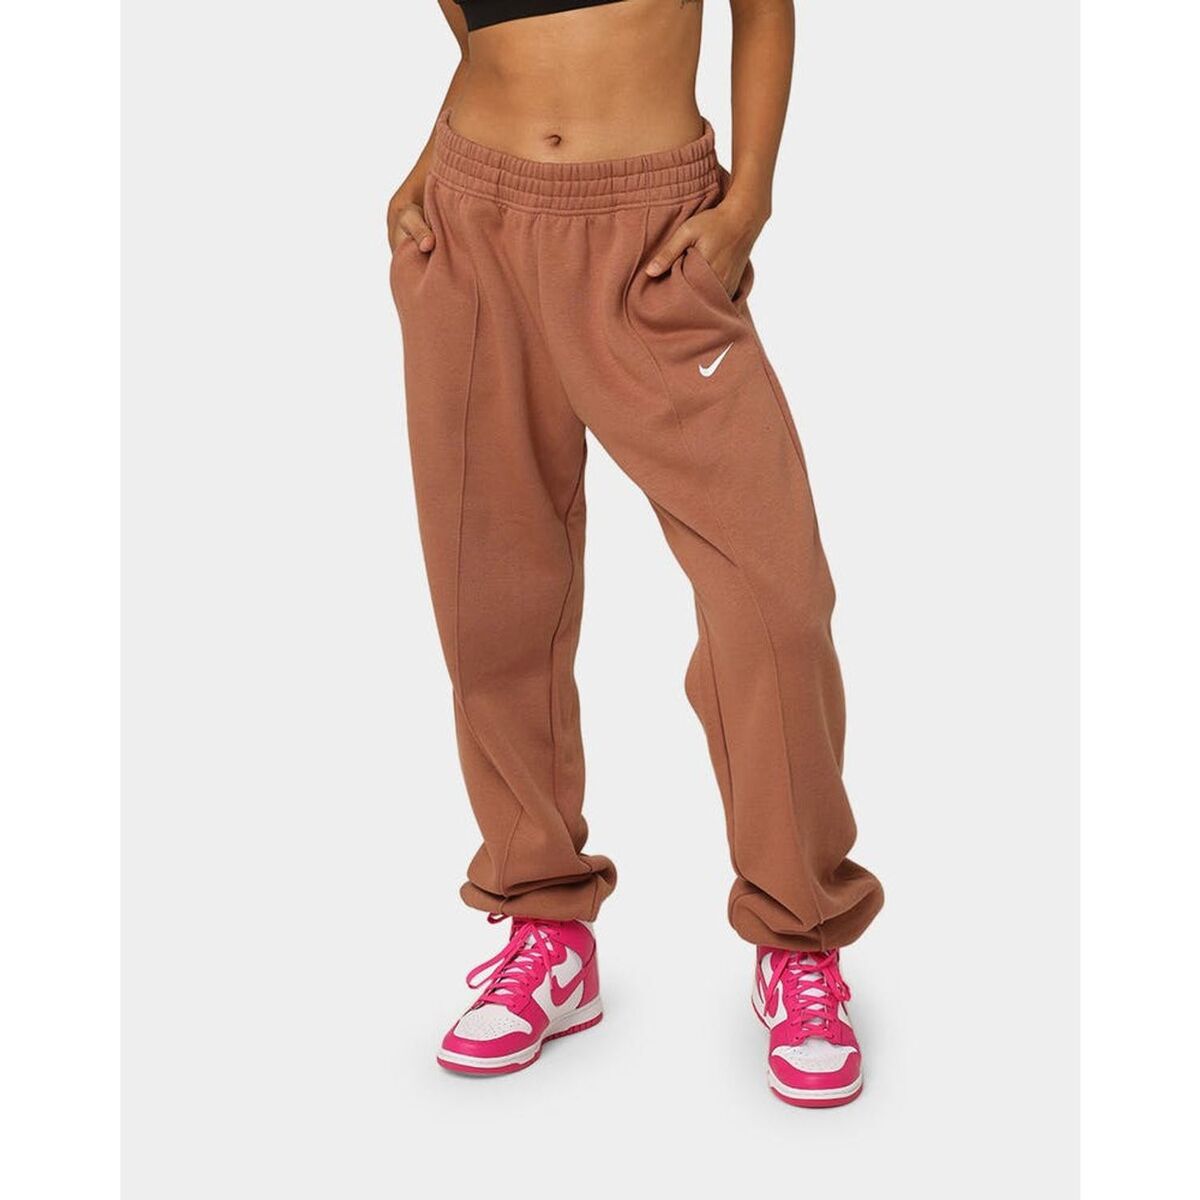 Nike Women Sportswear Essential Fleece Trousers Ladies Loungewear Joggers